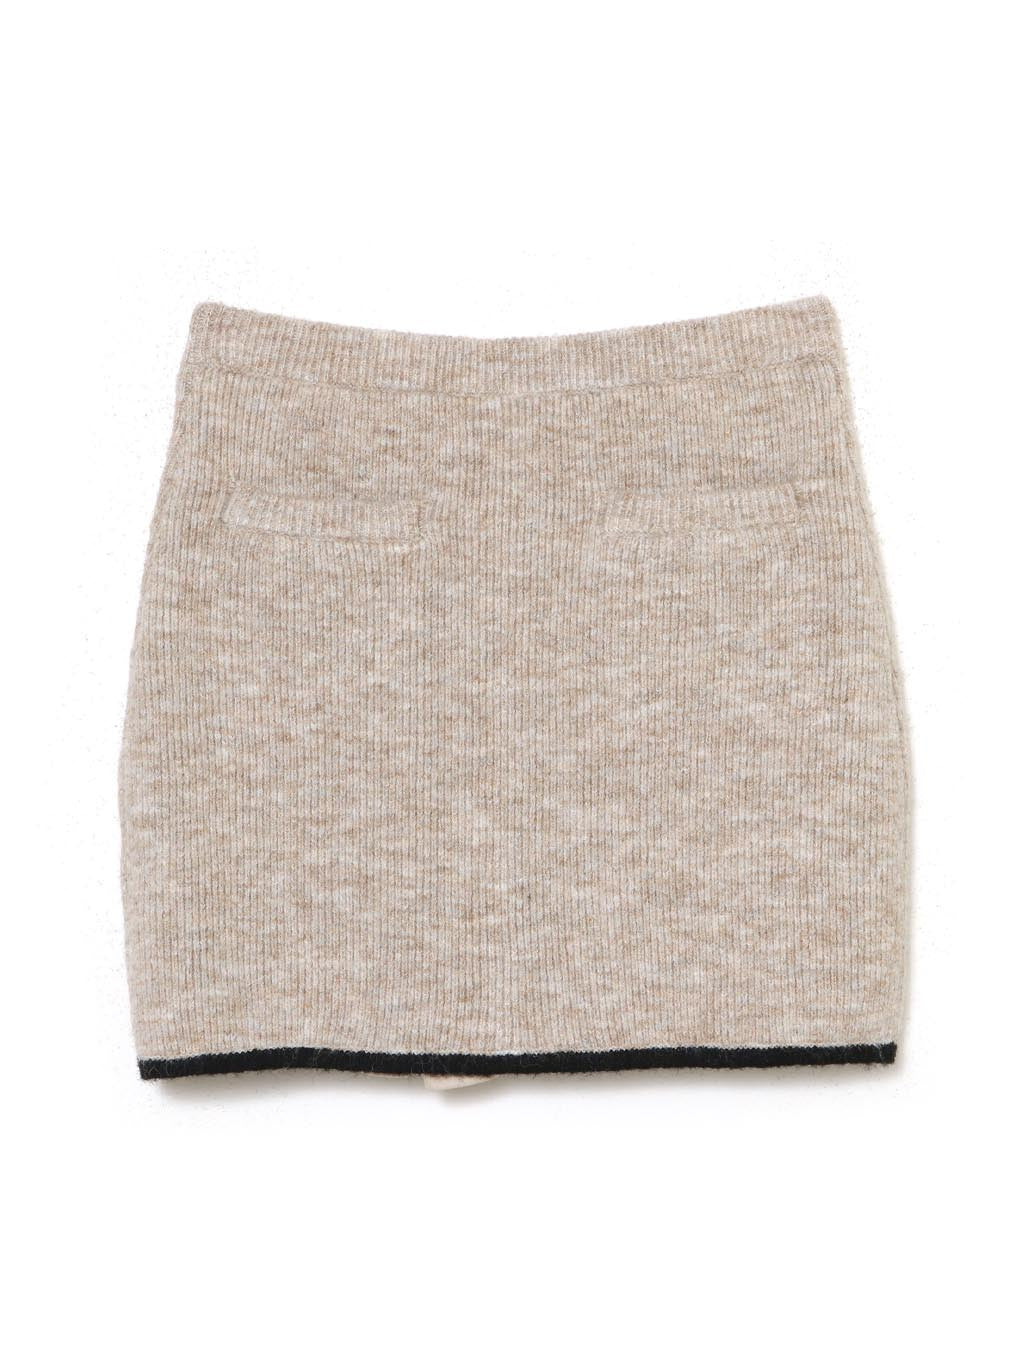 Abbie knit skirt free size andmaryandmary